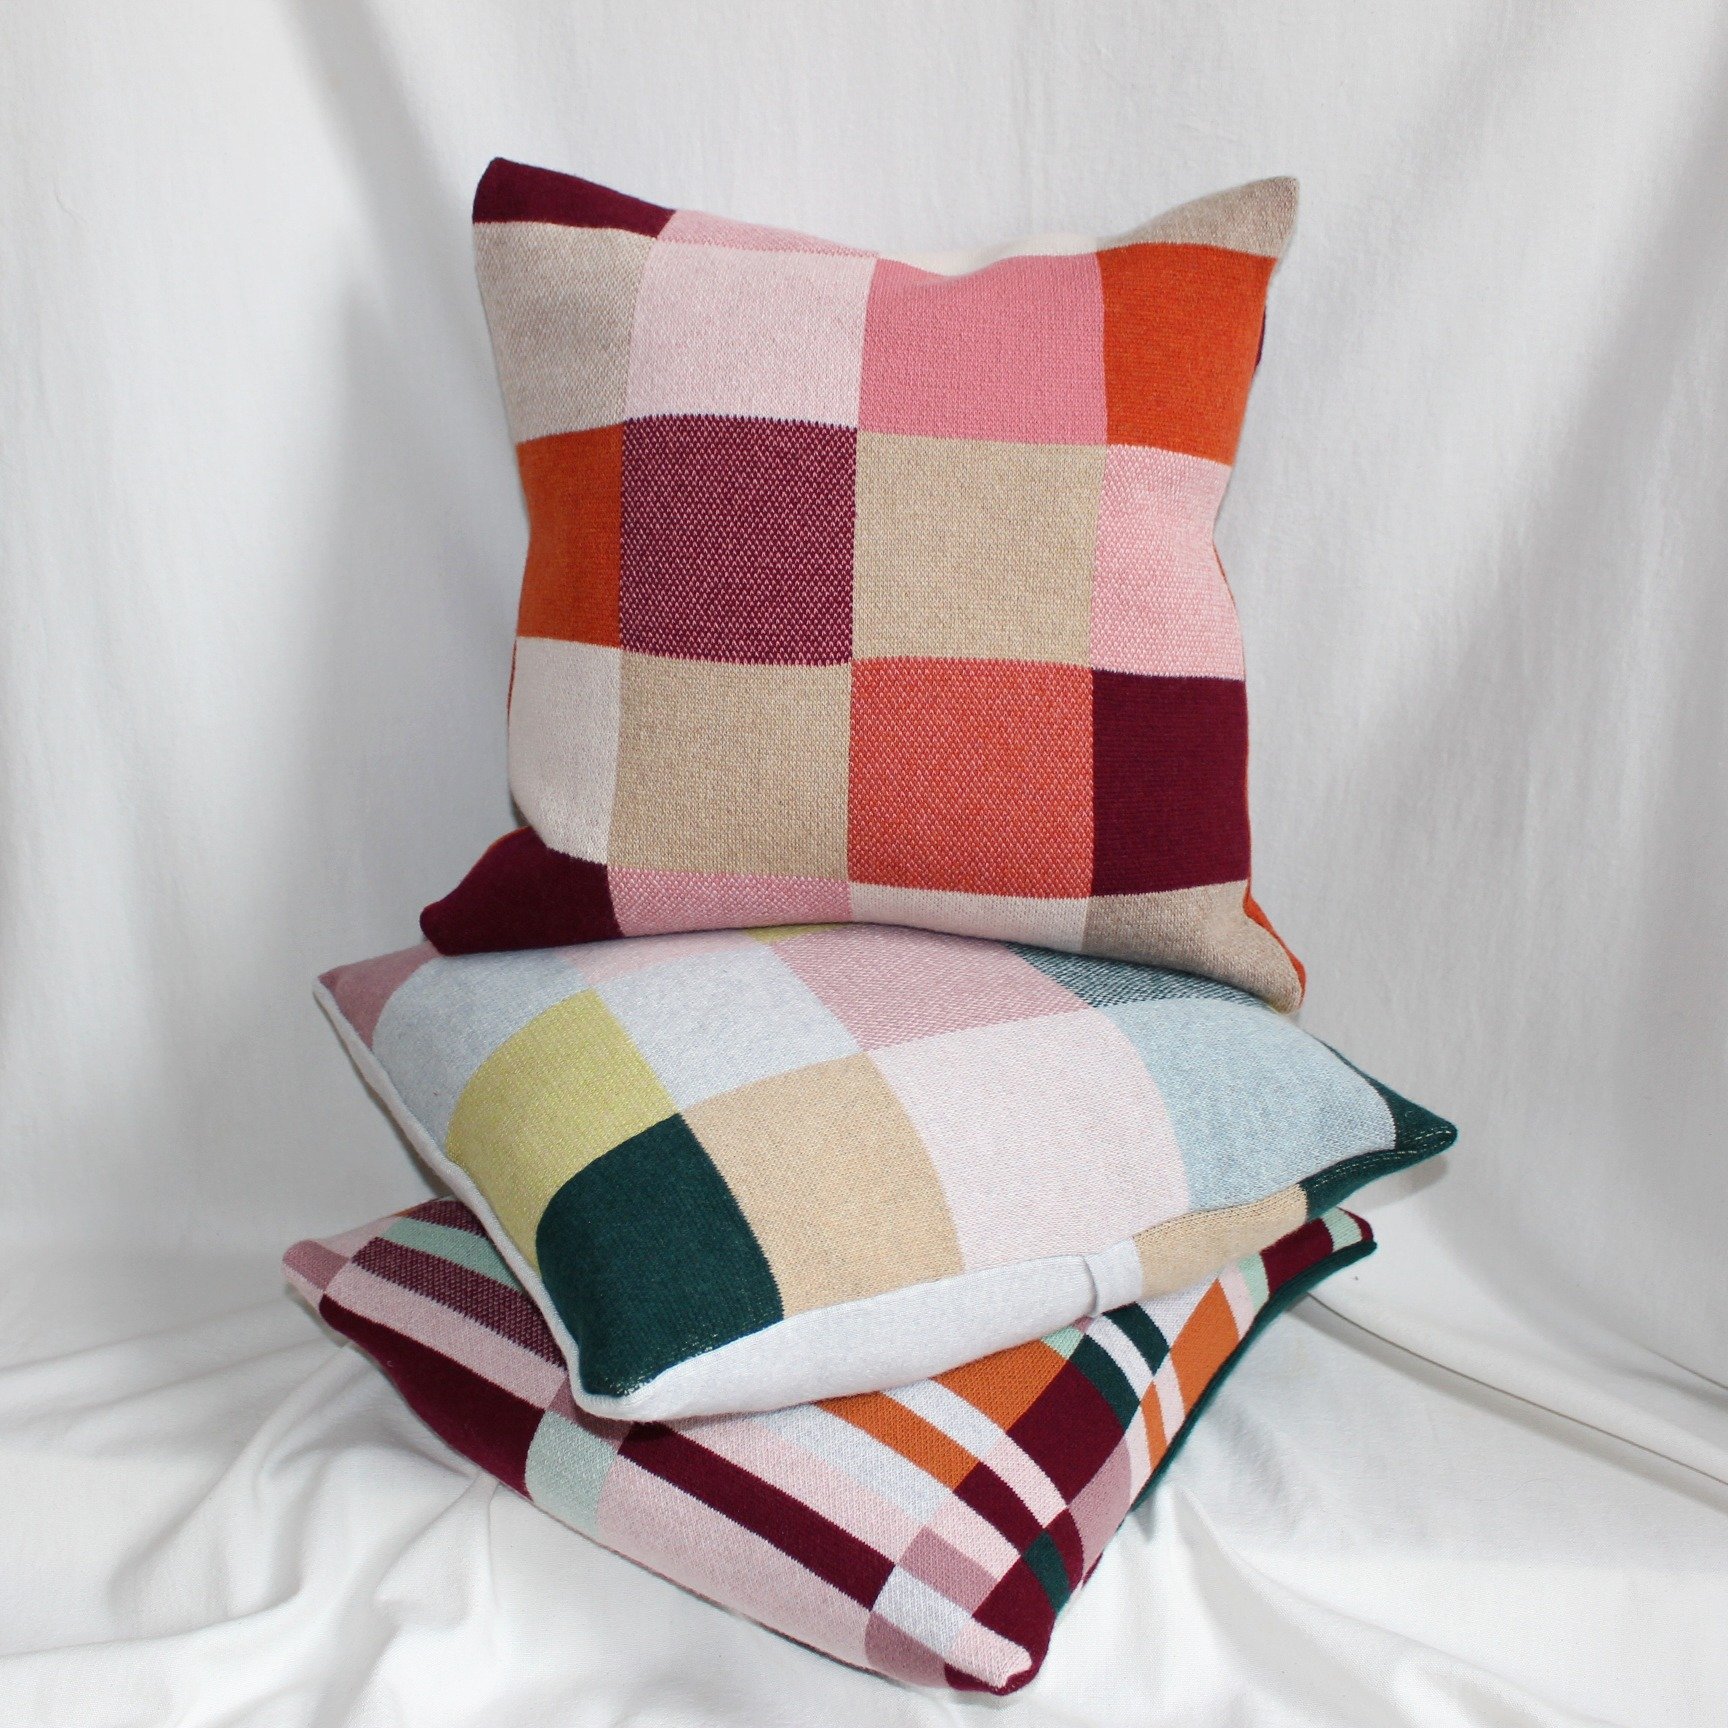 Knitluxe Studio Merino lambswool cushions.jpg